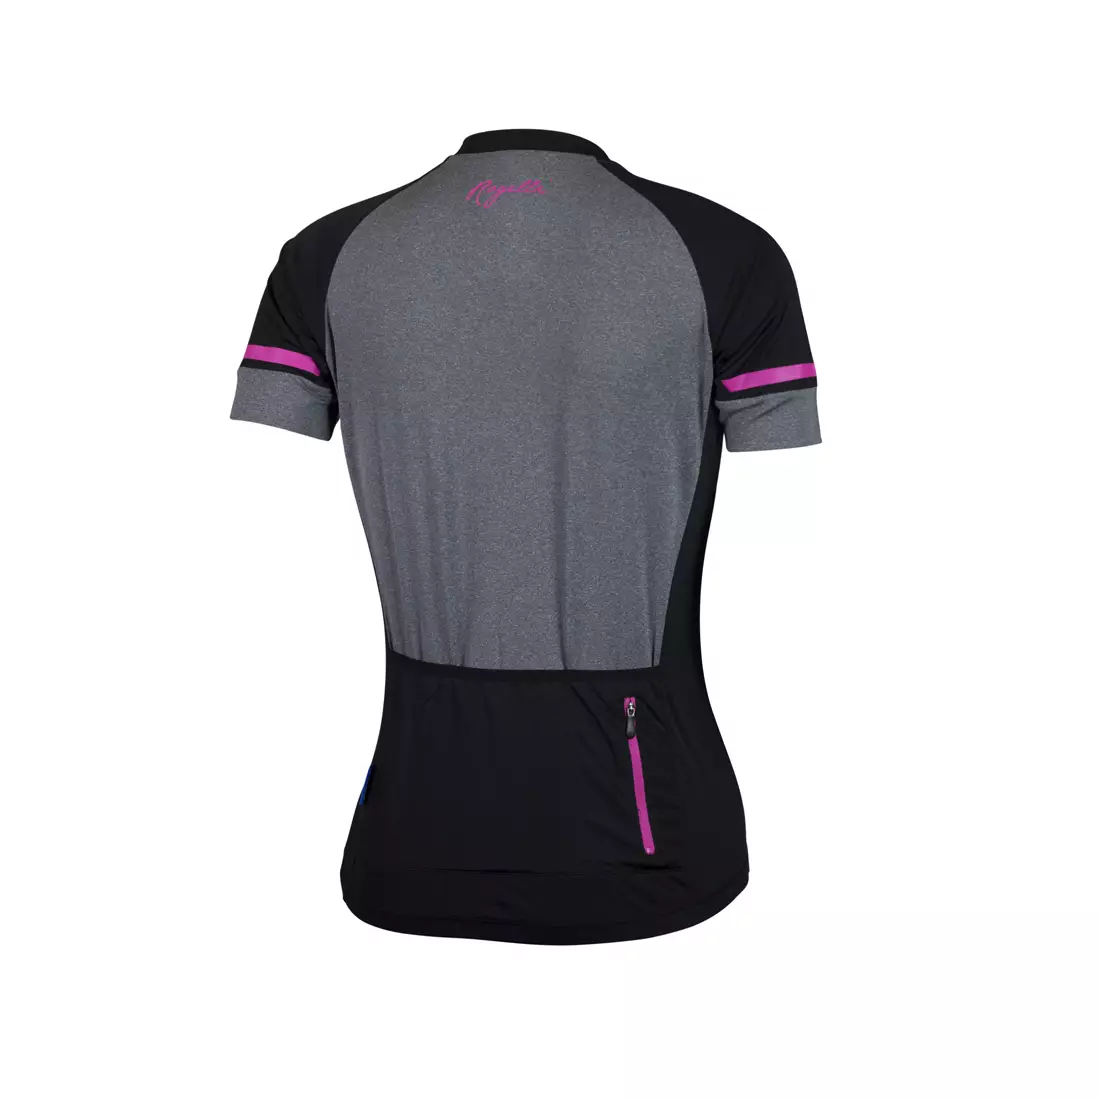 ROGELLI CARLYN 2.0 dámský cyklistický dres, černo-šedo-růžový 010.107